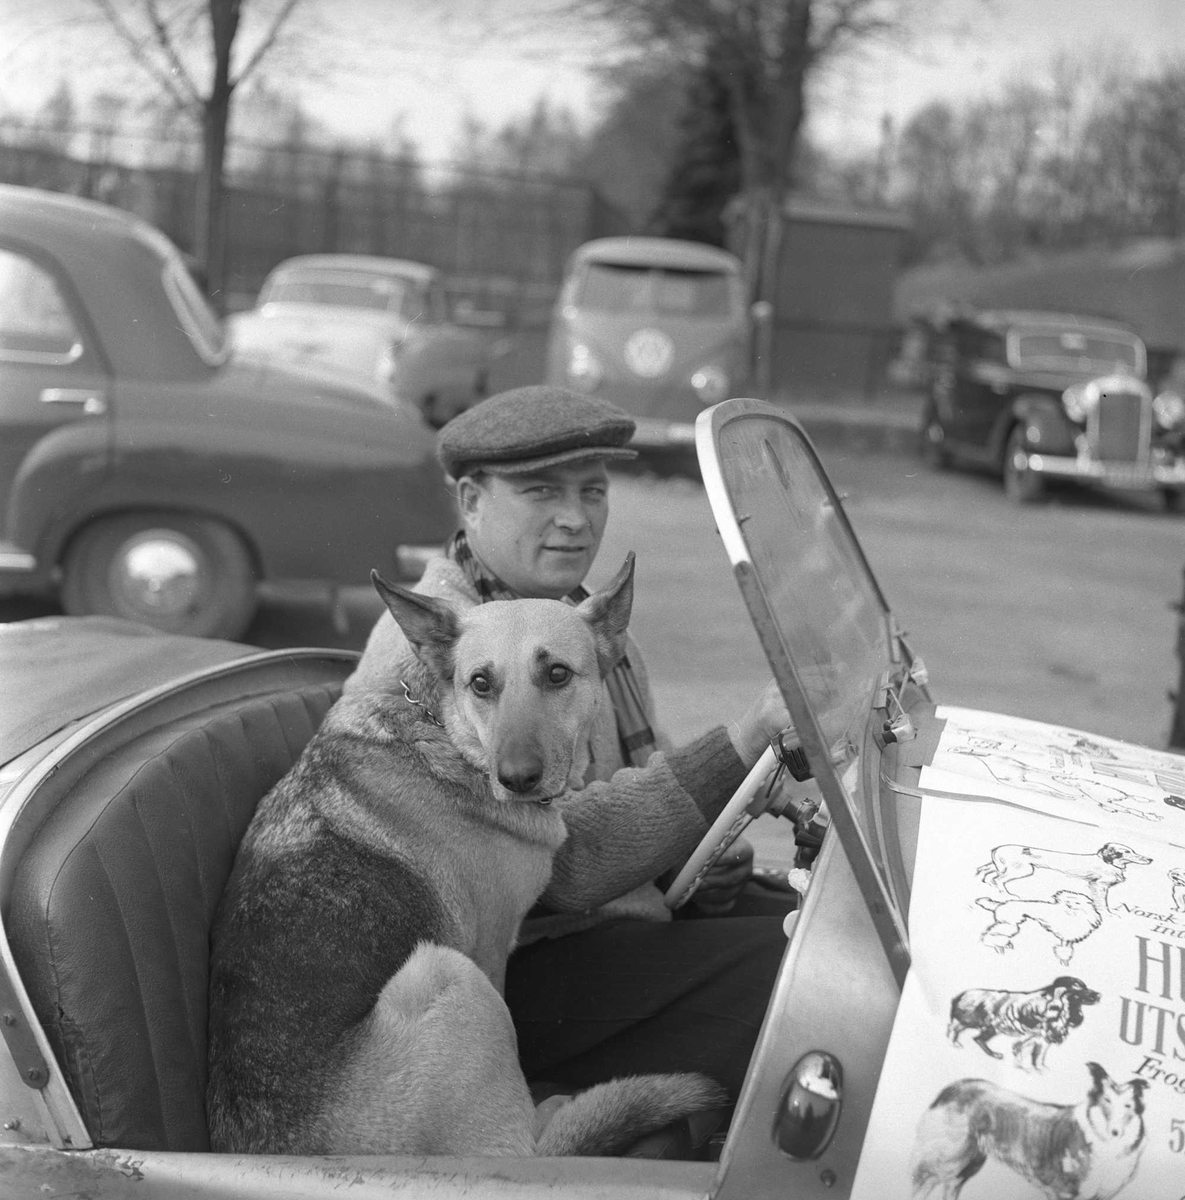 Mann og hund i bil. Hundeutstilling, Frogner, Oslo, mai 1956.